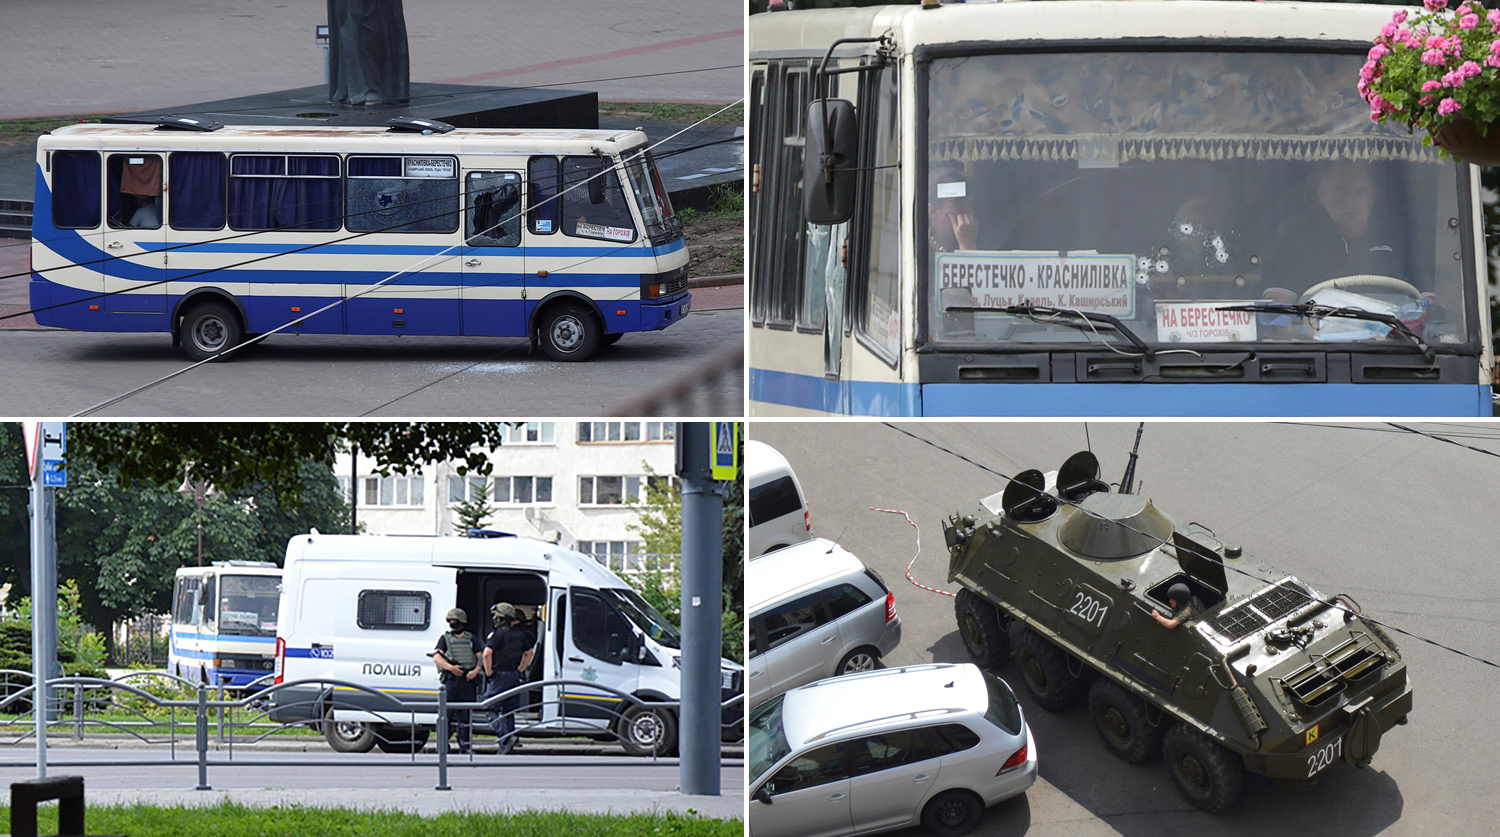 Захватчика автобуса в Луцке задержали - ВИДЕО